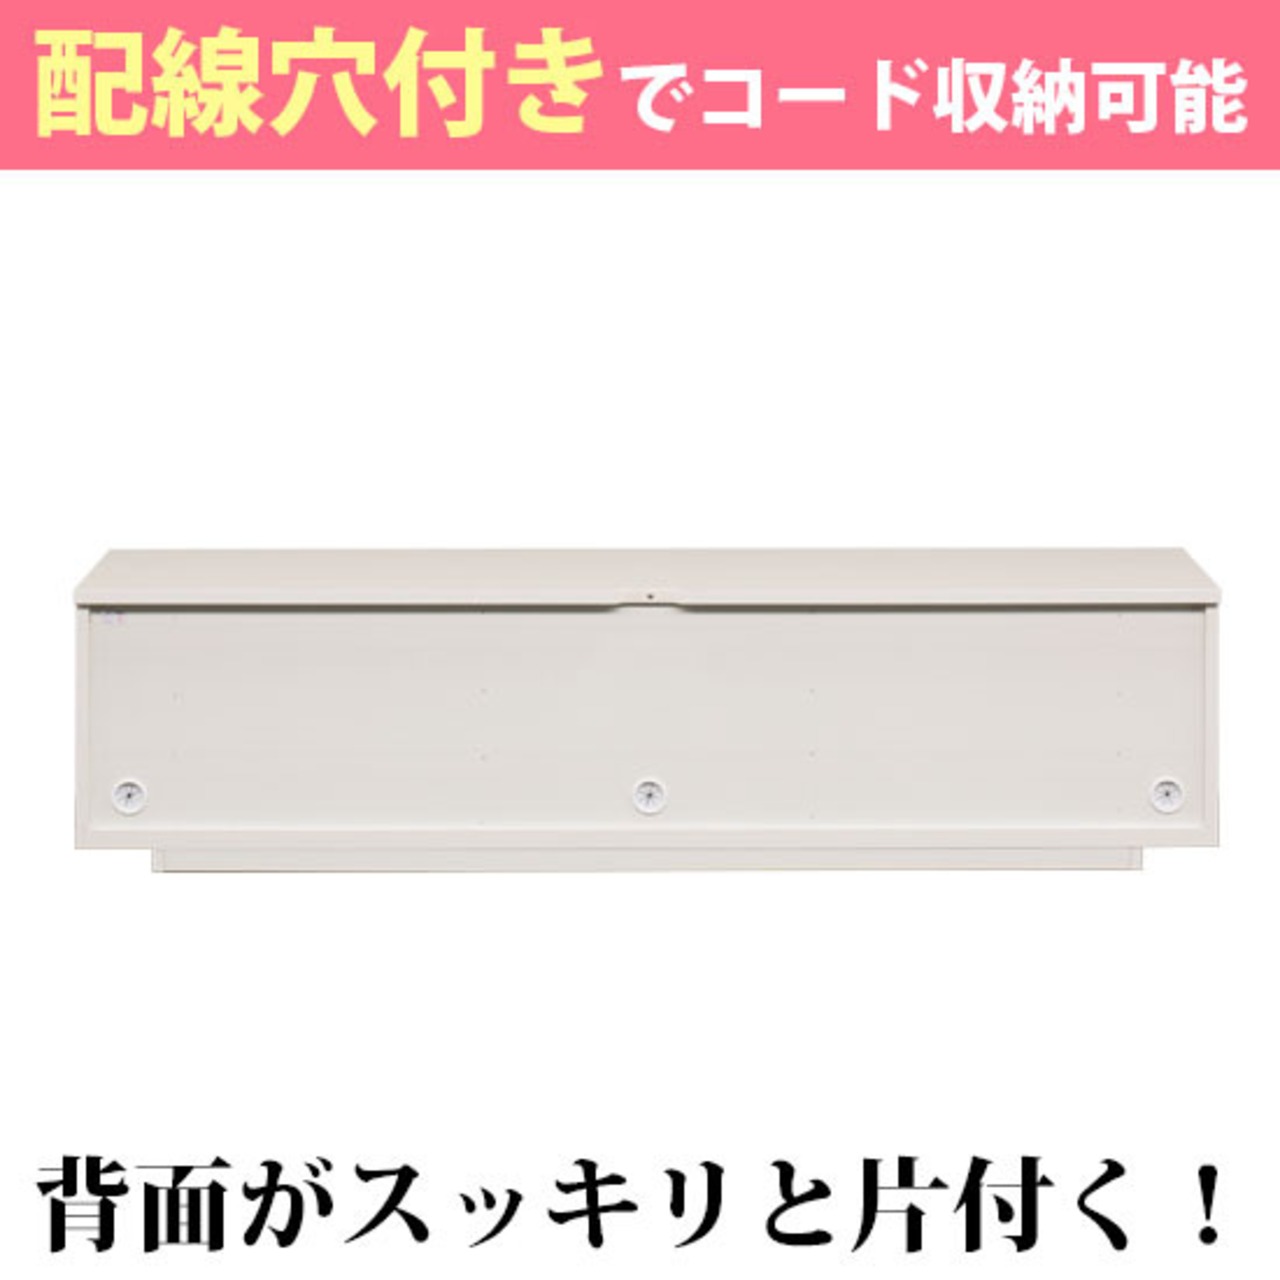 【幅180】テレビボード テレビ台 収納 ロータイプ (全2色)